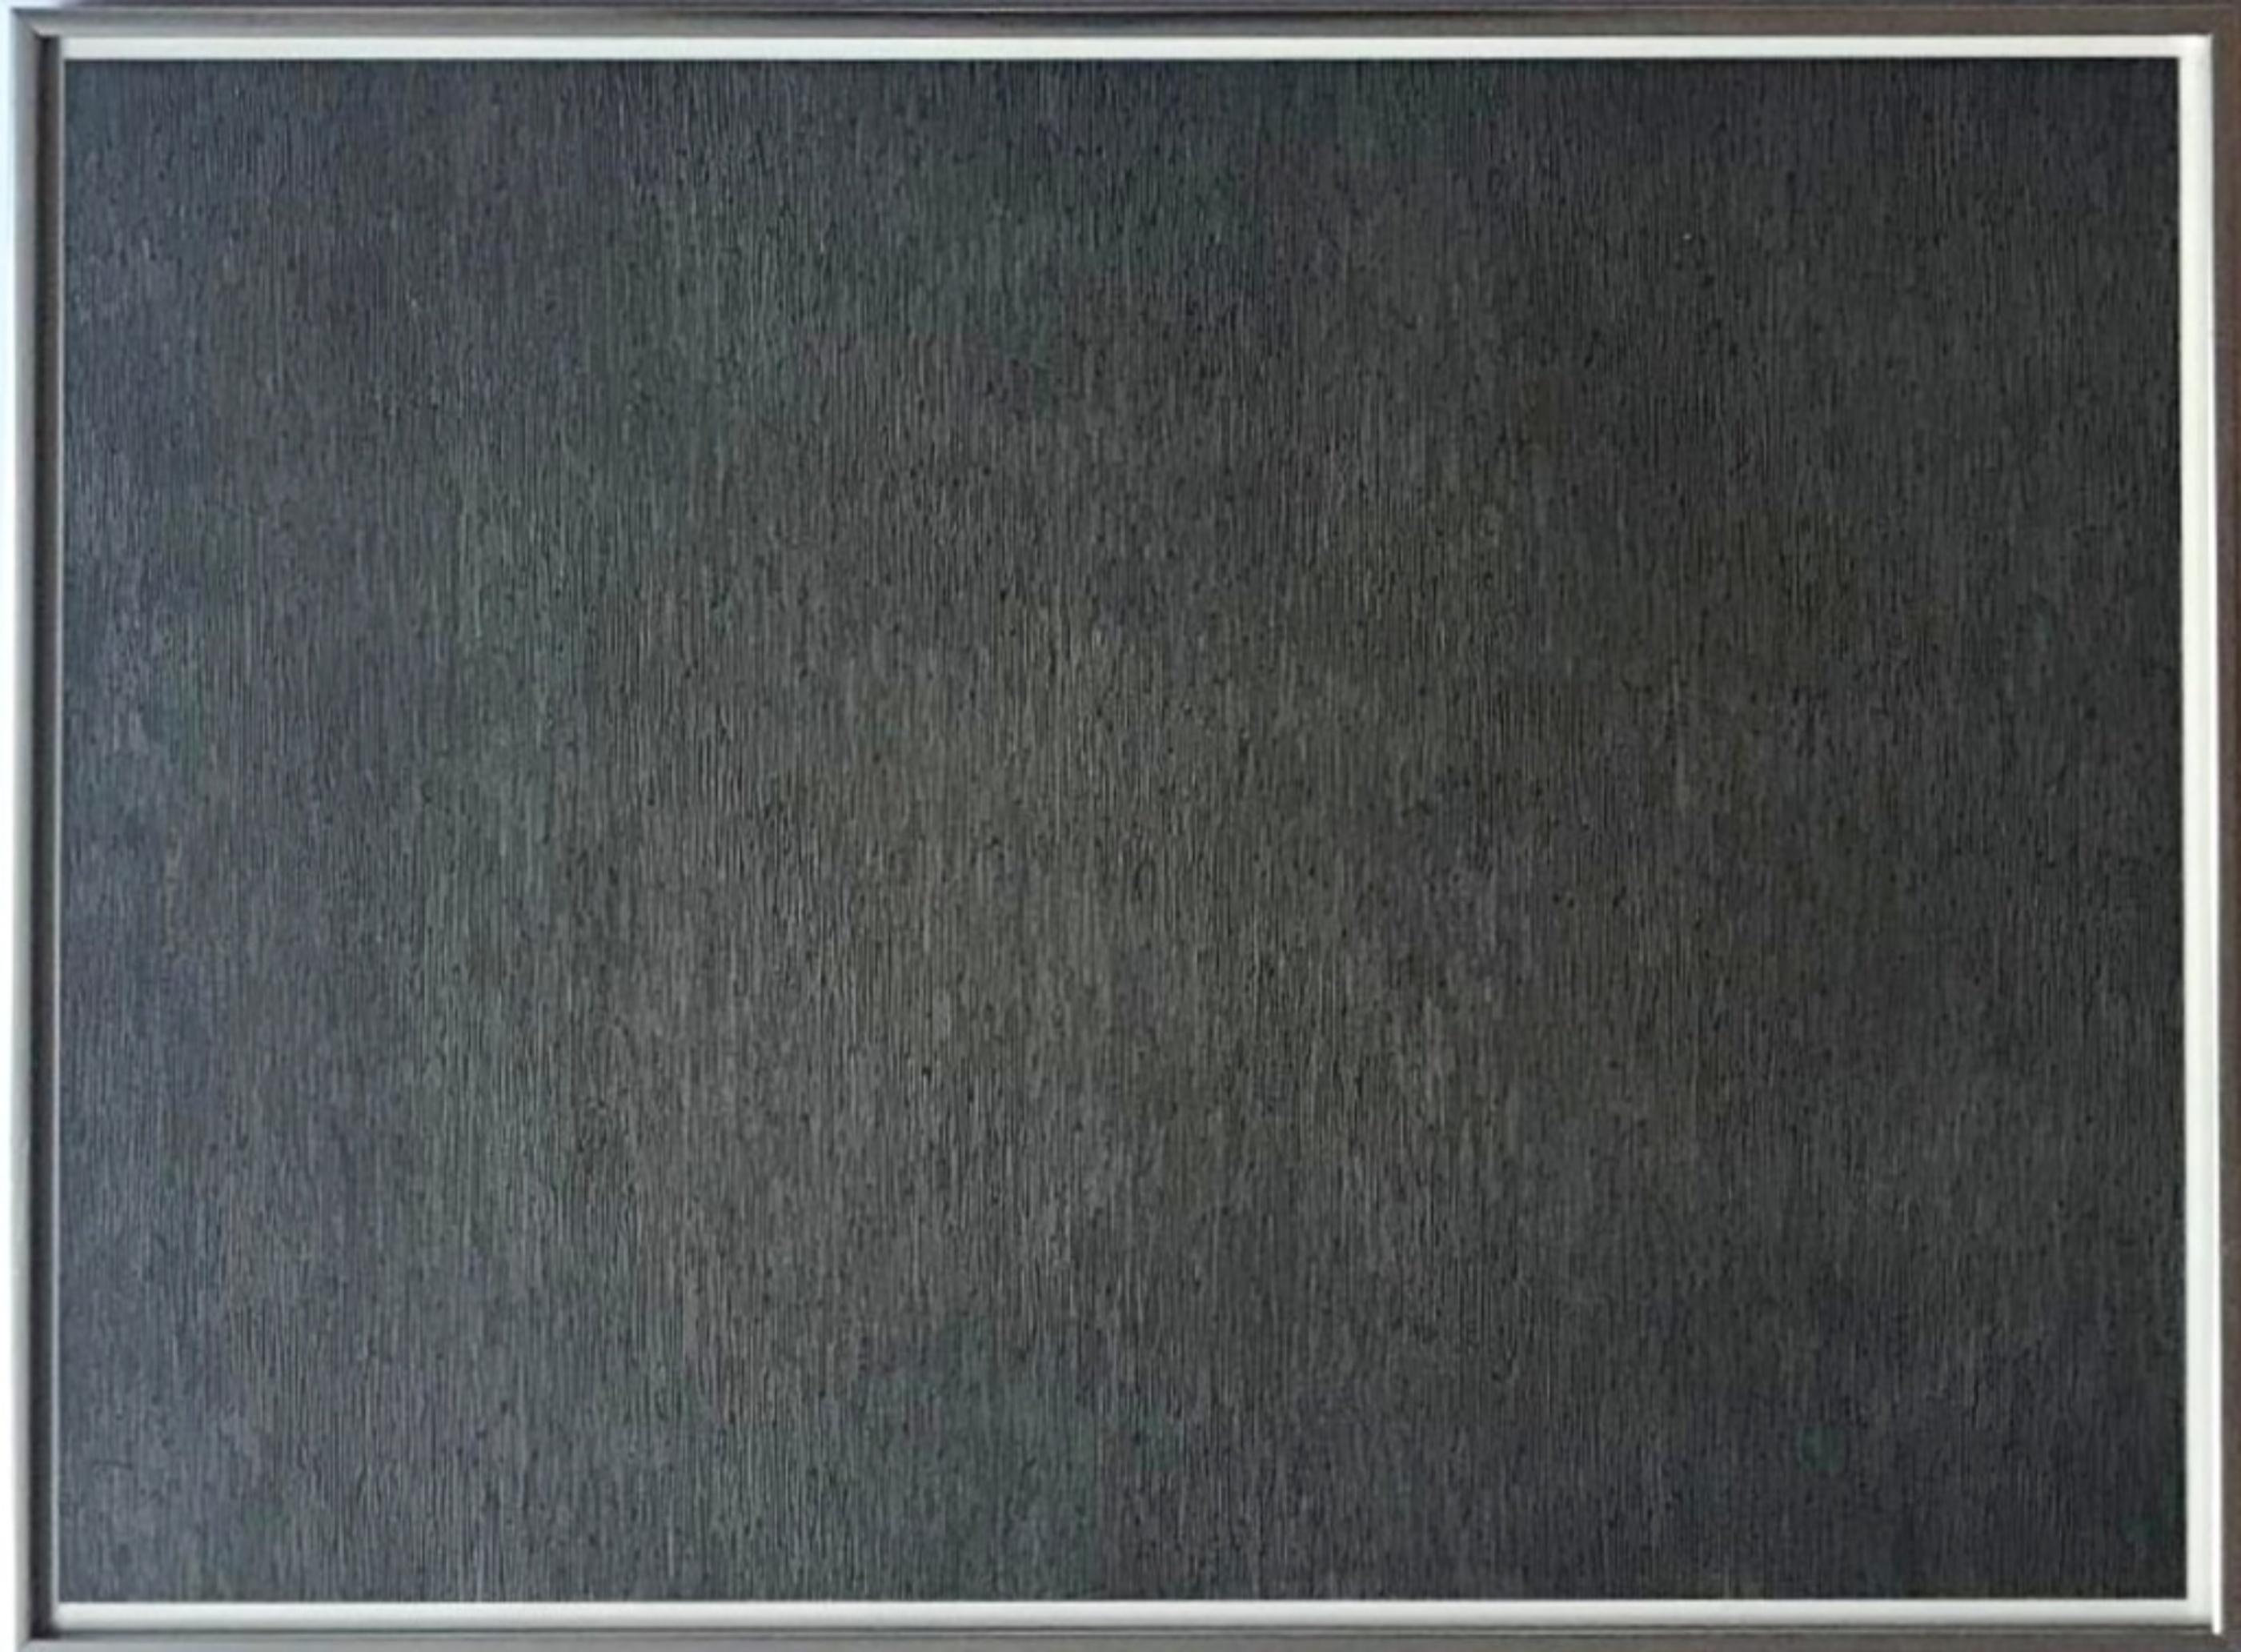 Black with White Lines, Vertical, Not Touching (Krakow 1970.07; 3. Kornfeld)